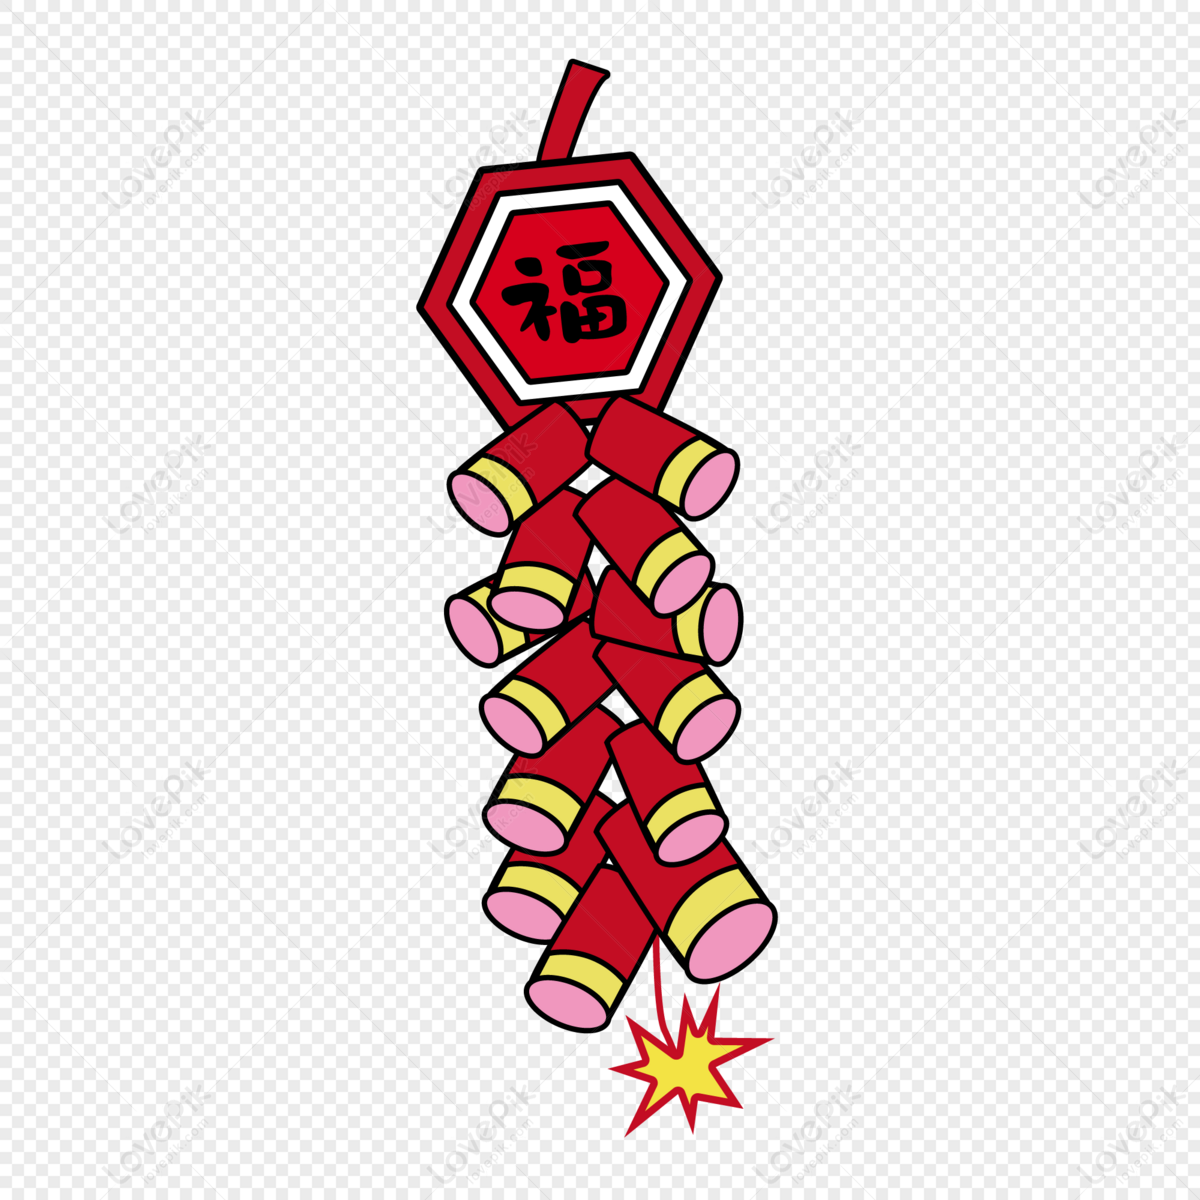 clipart de foguete de fogos de artifício do ano novo chinês. foguete  vermelho simples de fogos